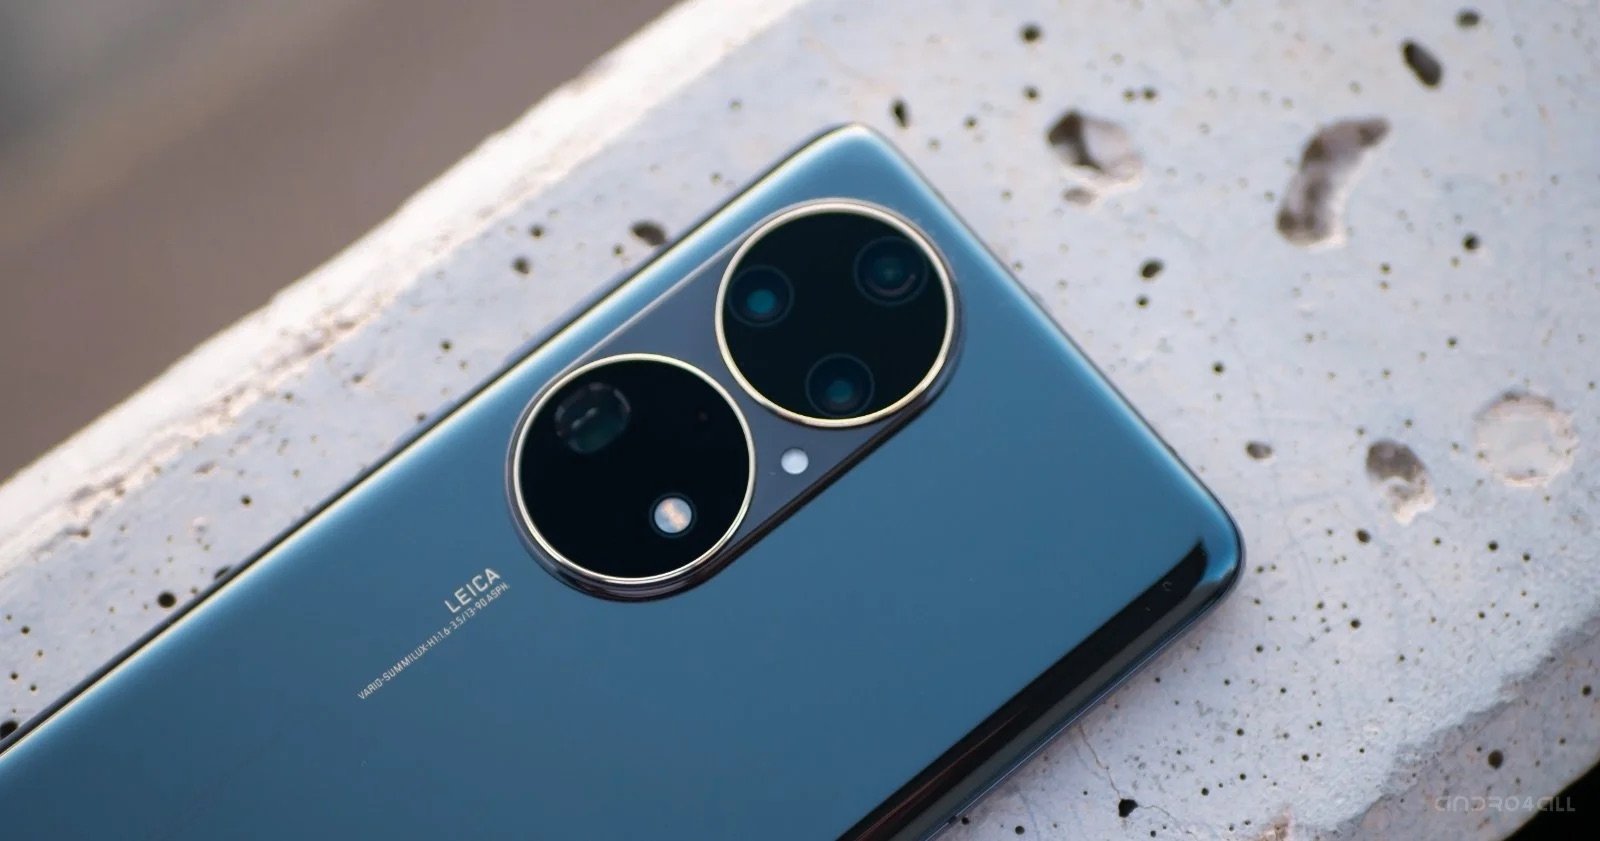 Comprar un móvil Huawei en 2022: mejores modelos